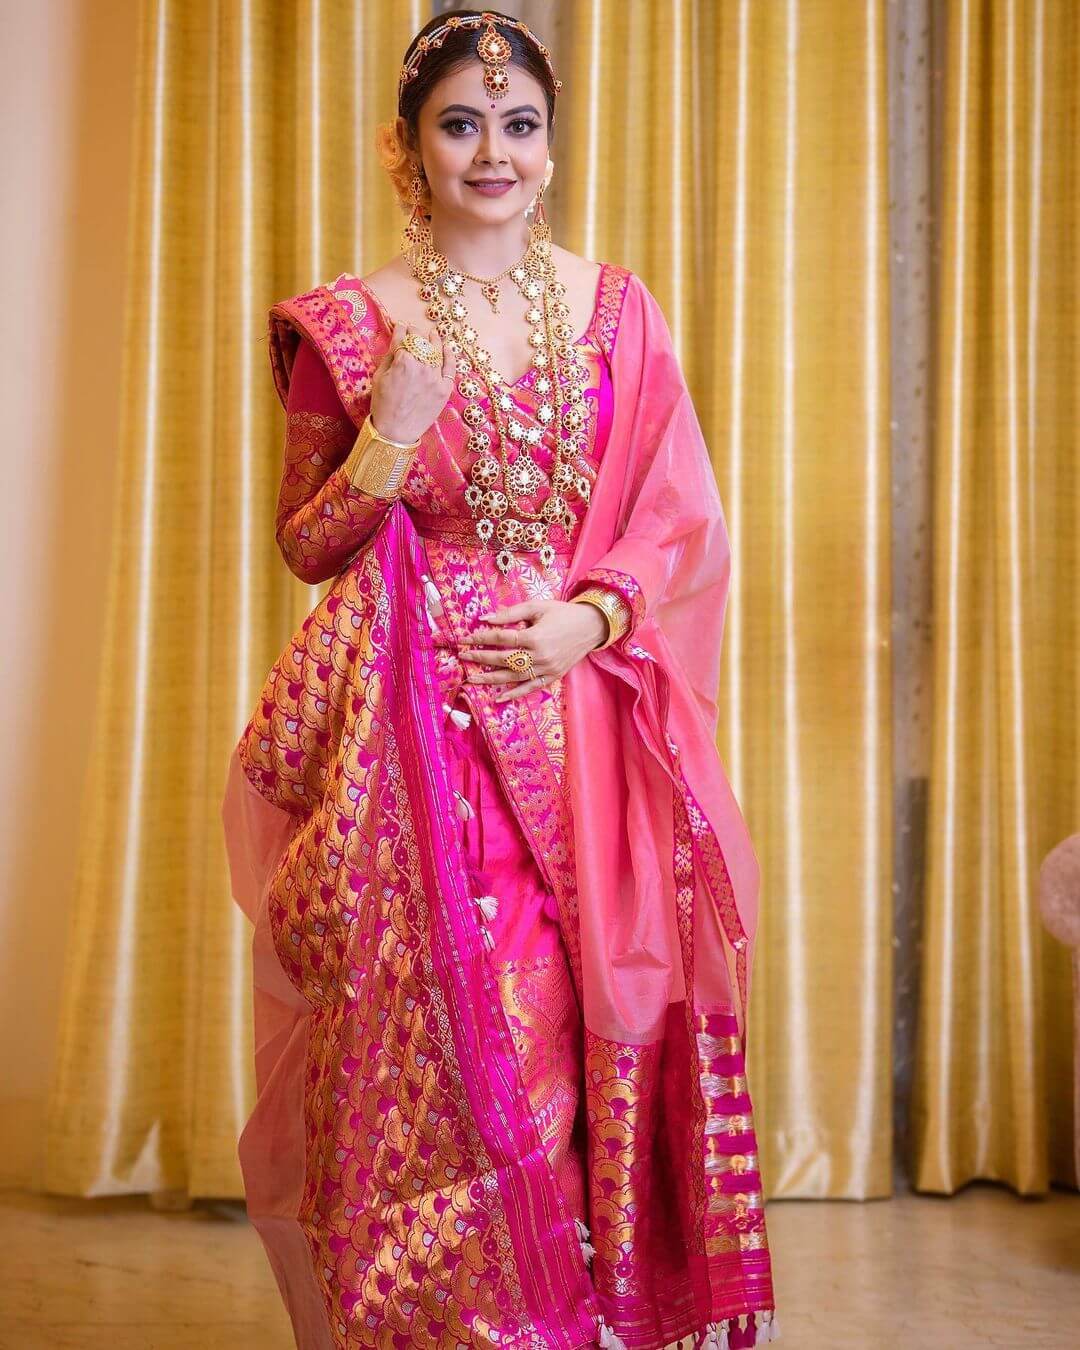 Devoleena In Pink Banarasi Saree Lehenga Bridal Look